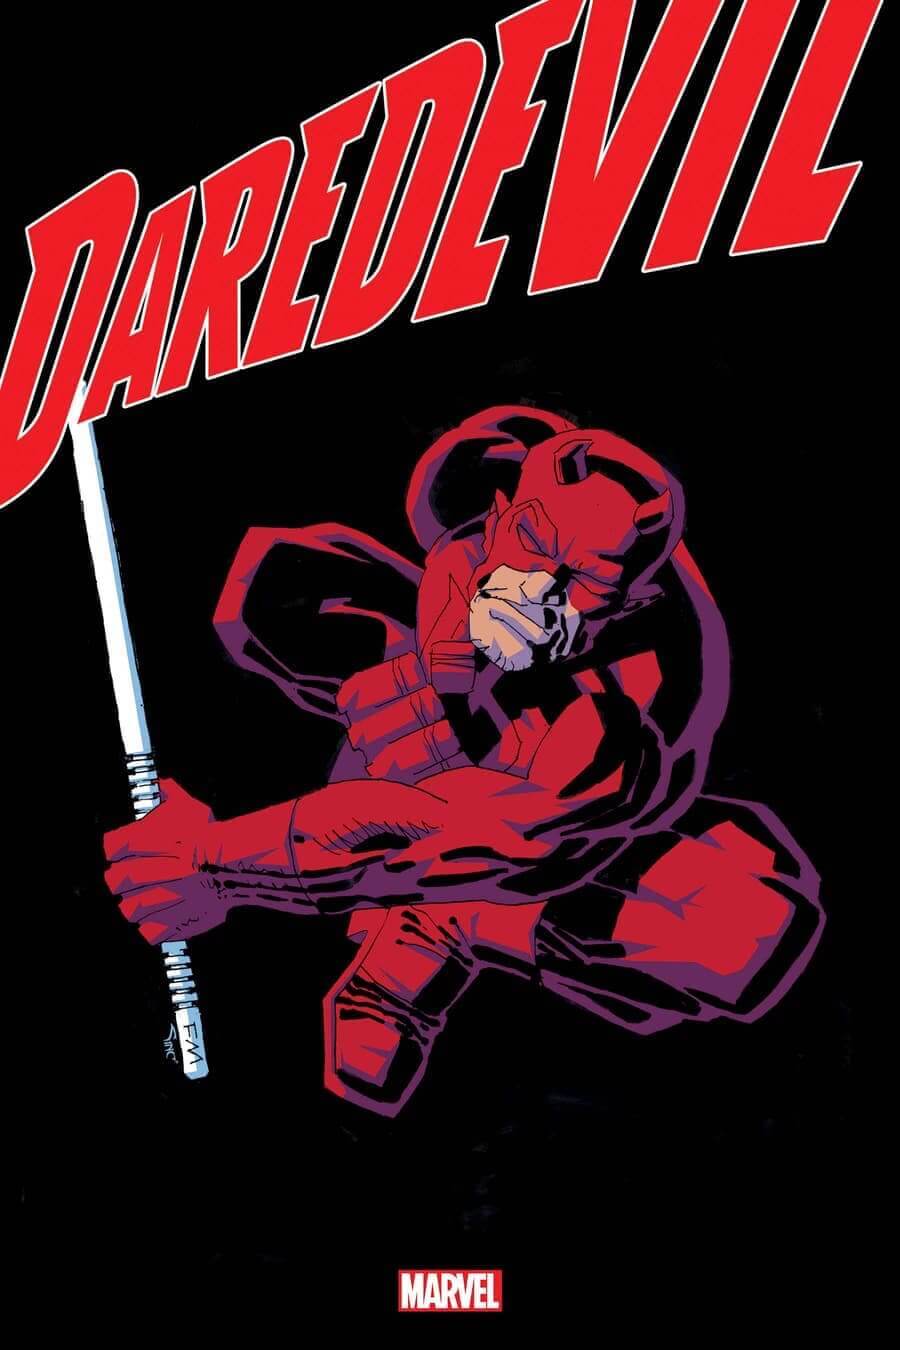 Frank Miller returns To Daredevil For New Cover The Nerd Stash